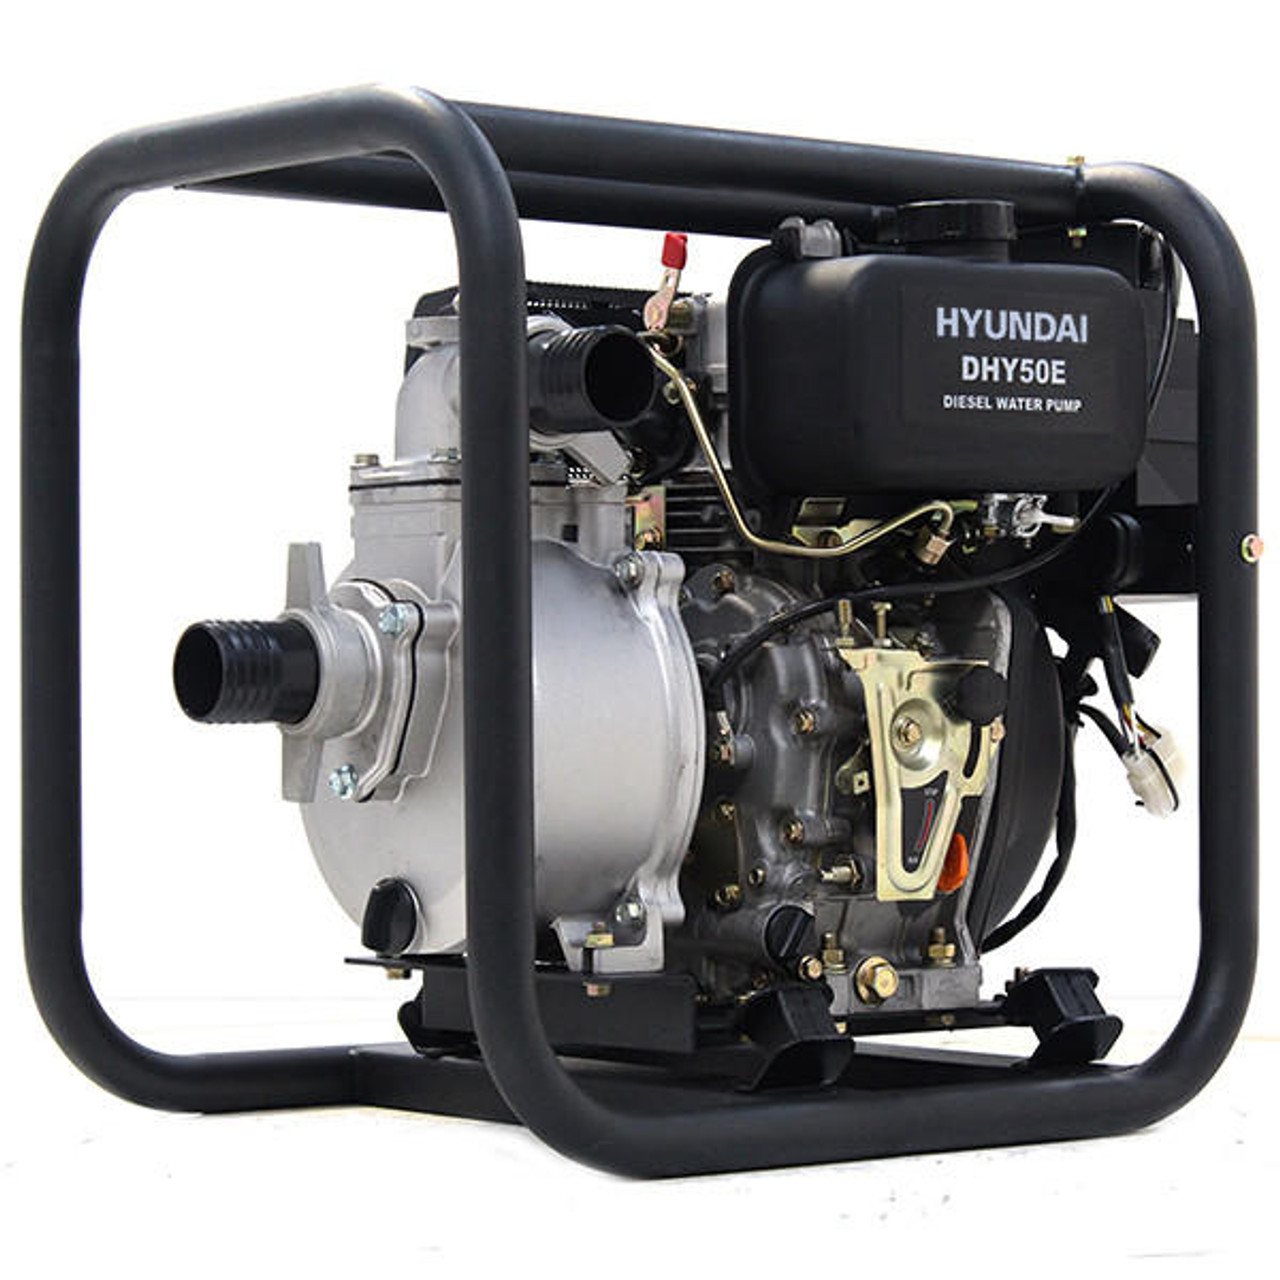 Hyundai 50mm 2''Diesel Water Pump, 25m Total Head, 8m Lift, 600L/min Flow  Rate, 6hp, 221cc